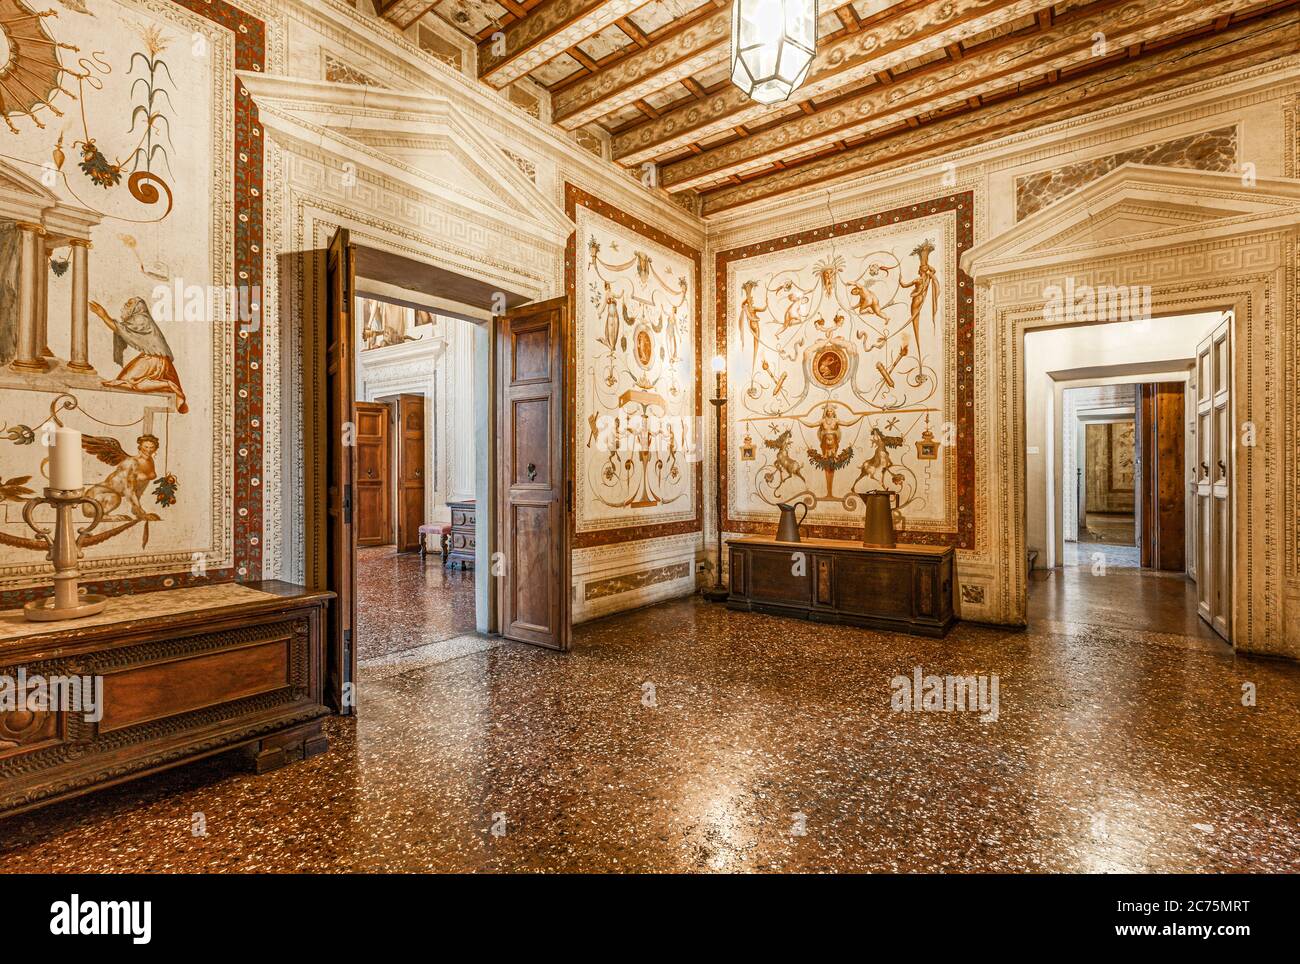 Italie Veneto - Fanzolo - Villa Emo - Andrea Palladio architecte - petite salle occidentale des Grotesqueries - fresques de Battista Zelotti Banque D'Images